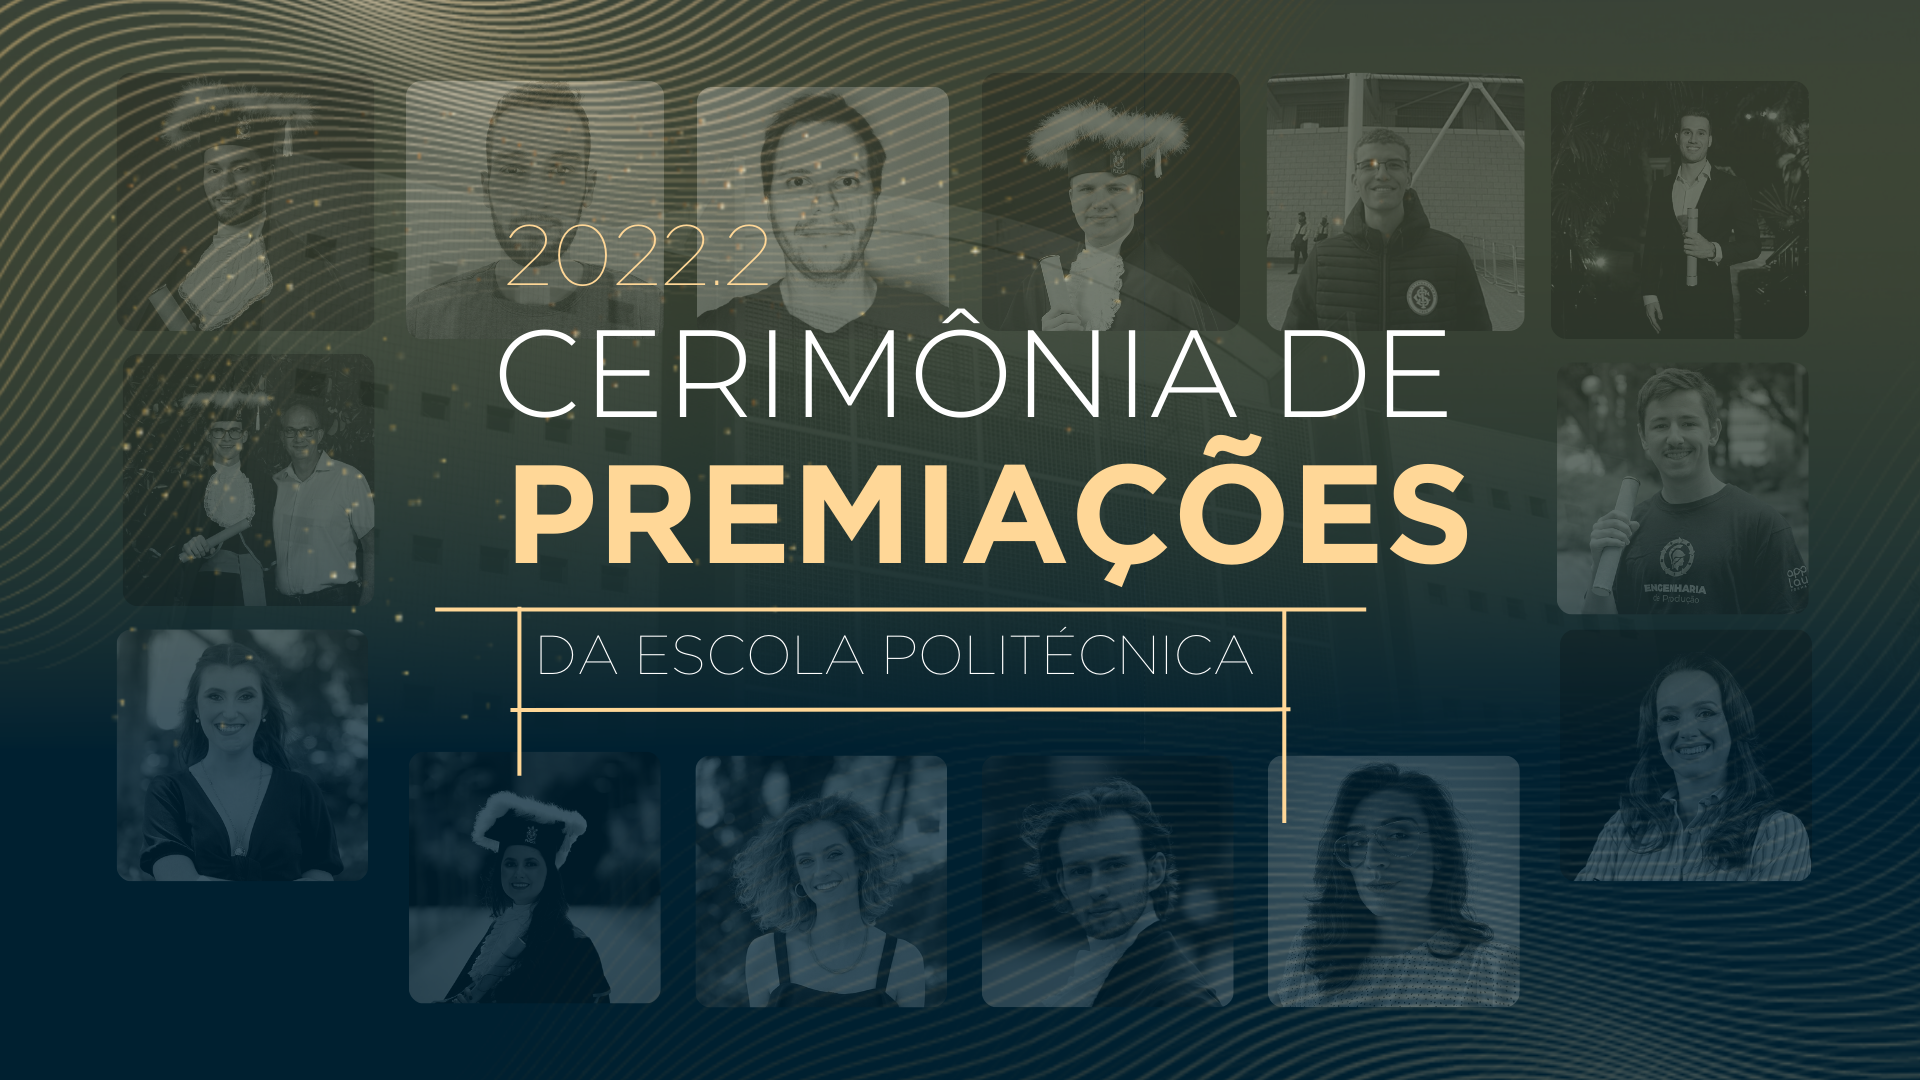 Cerimônia de Premiações da Escola Politécnica 2022.2